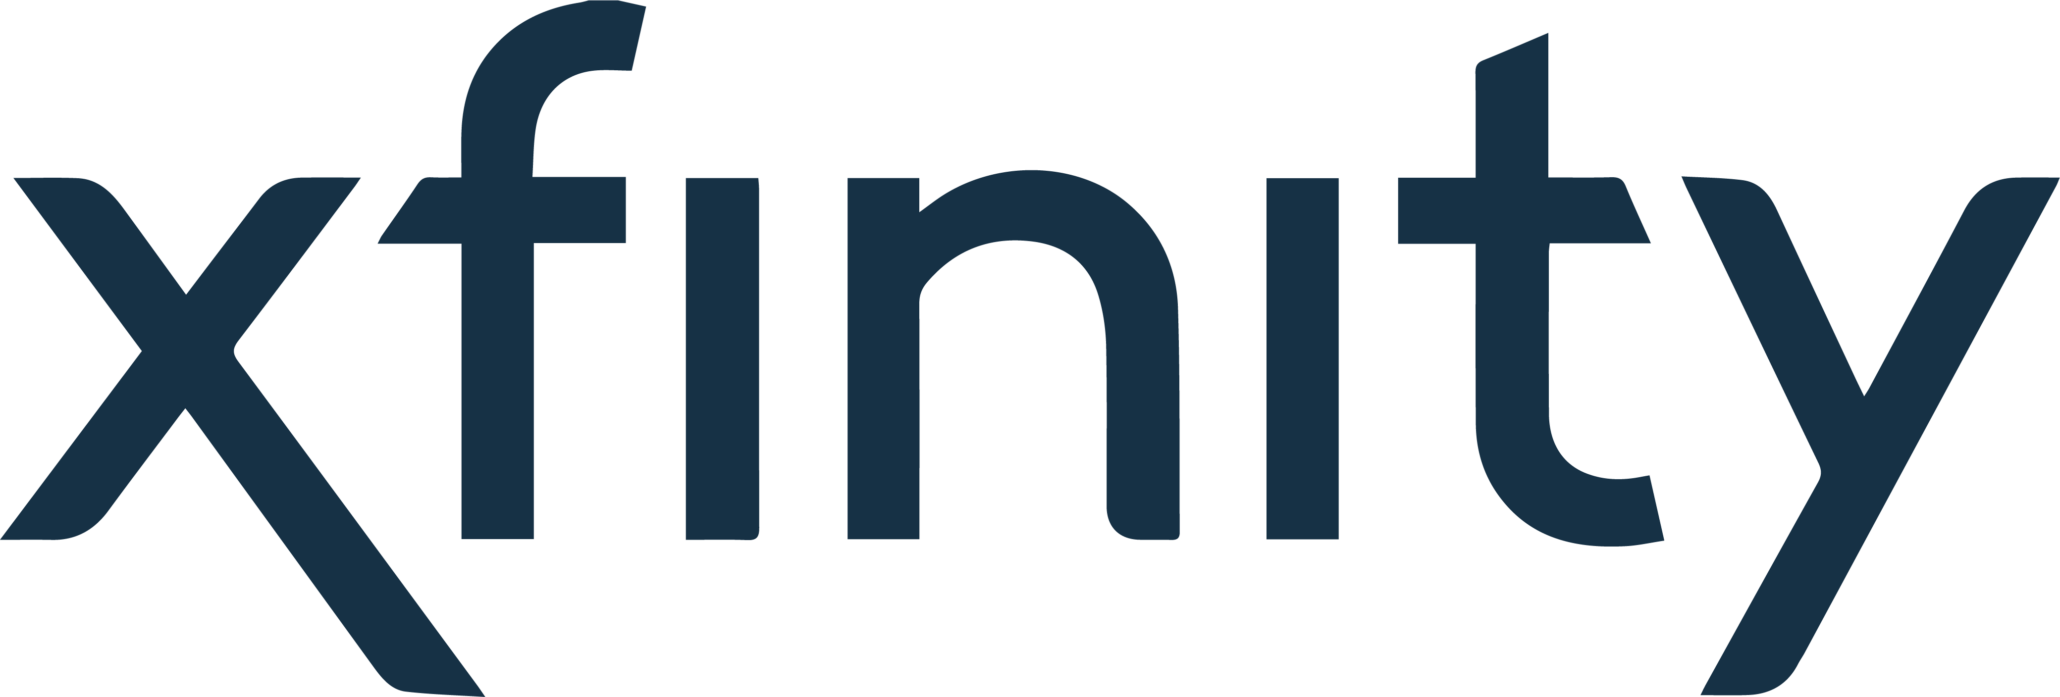 Xfinity client logo